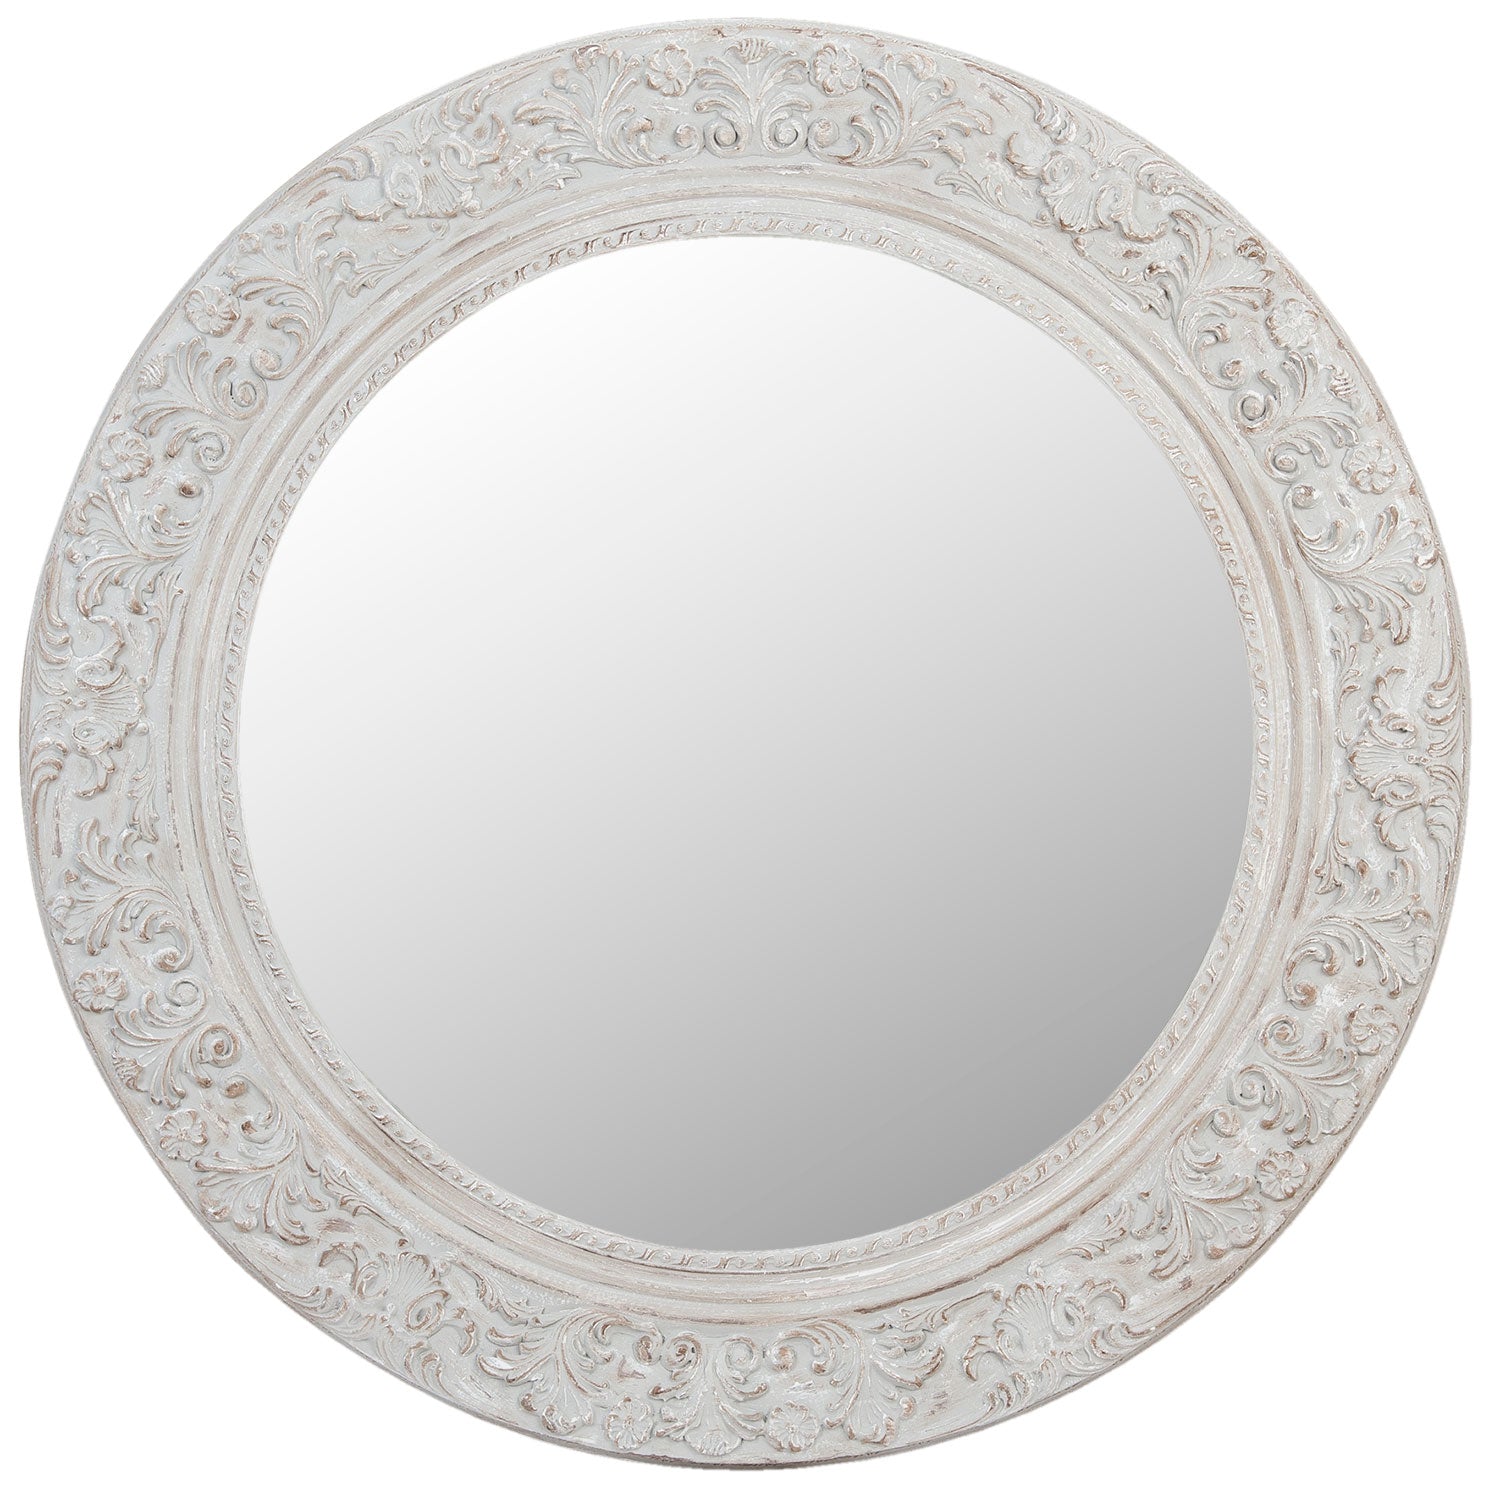 Round mirror with decoration Ø 120cm